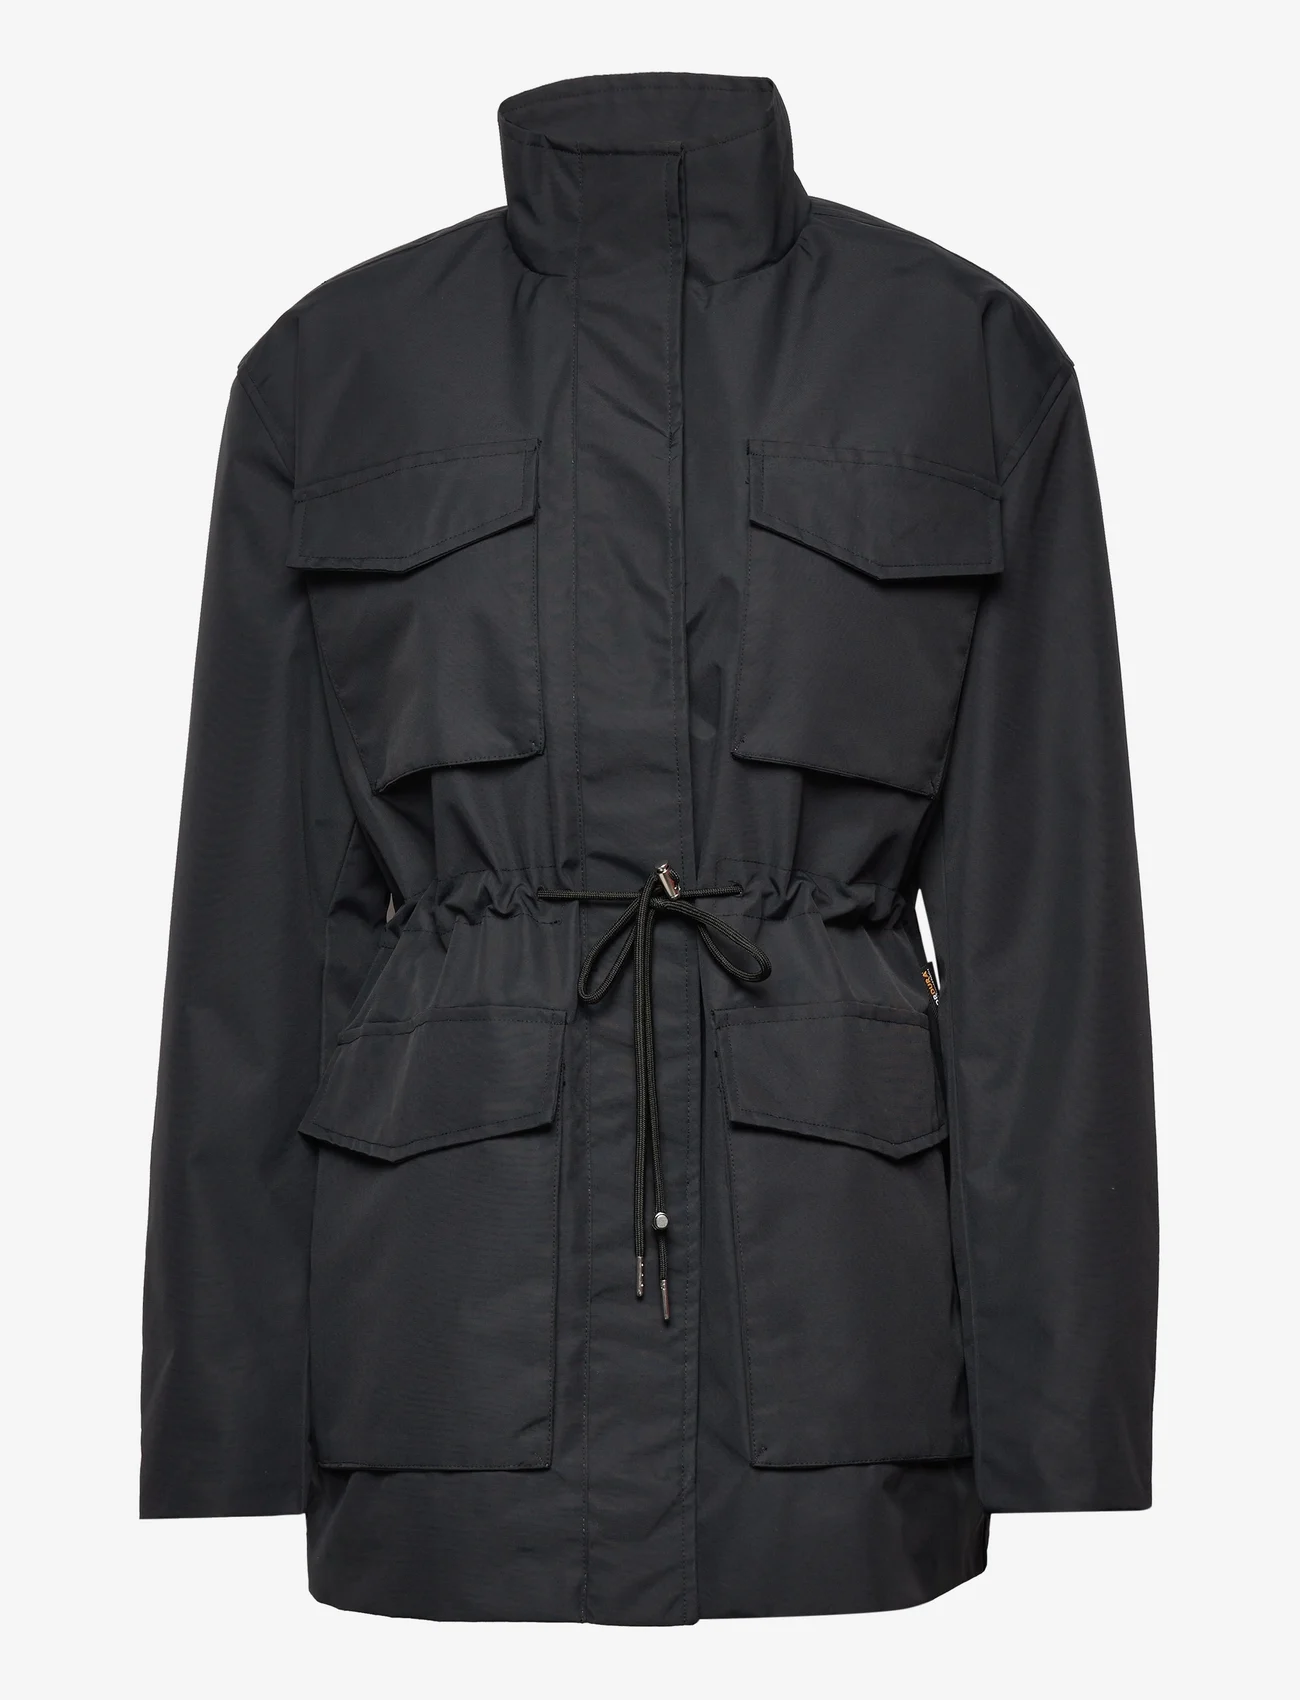 HAN Kjøbenhavn - Nylon Shirt Jacket - black - 0